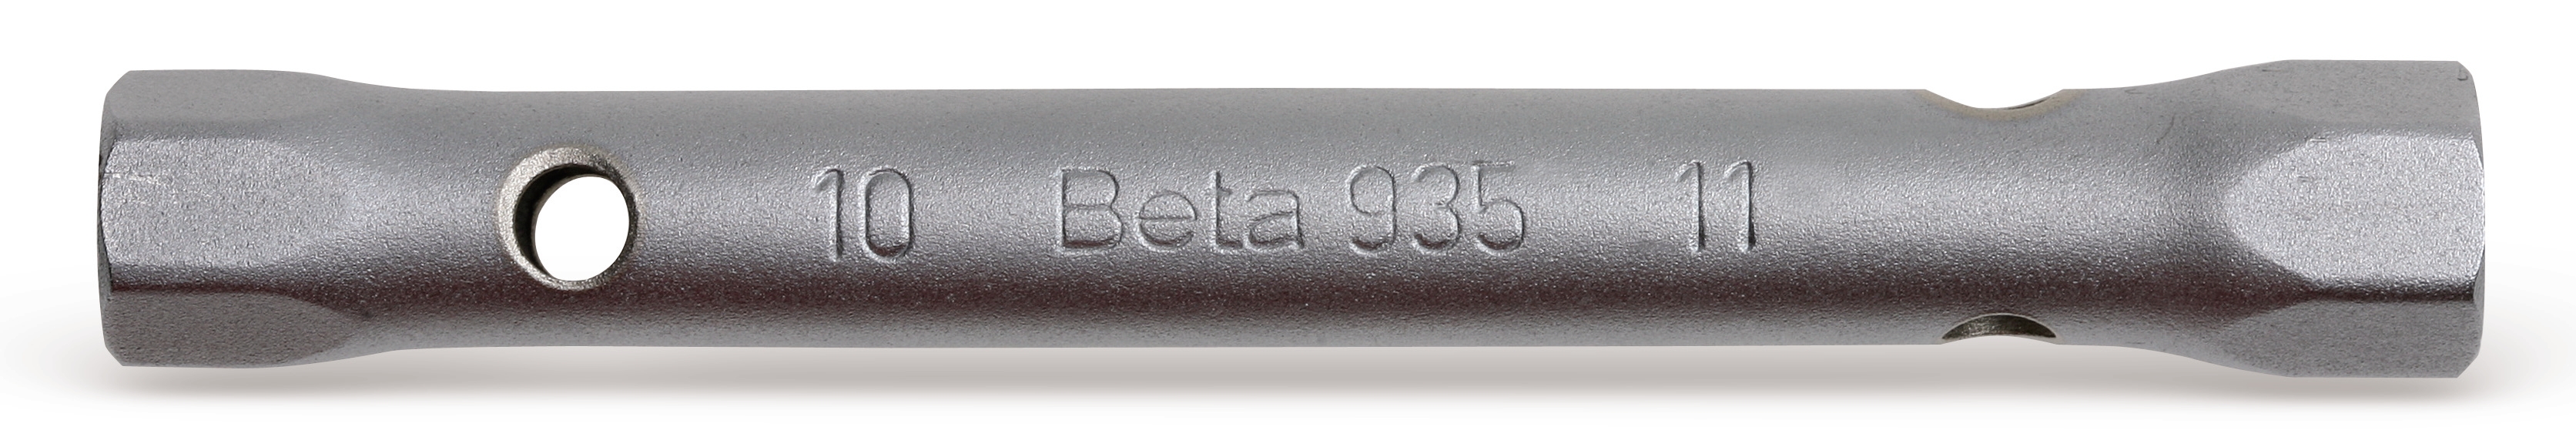 Σωληνωτό Κλειδί Ελαφριού Τύπου 935 BETA